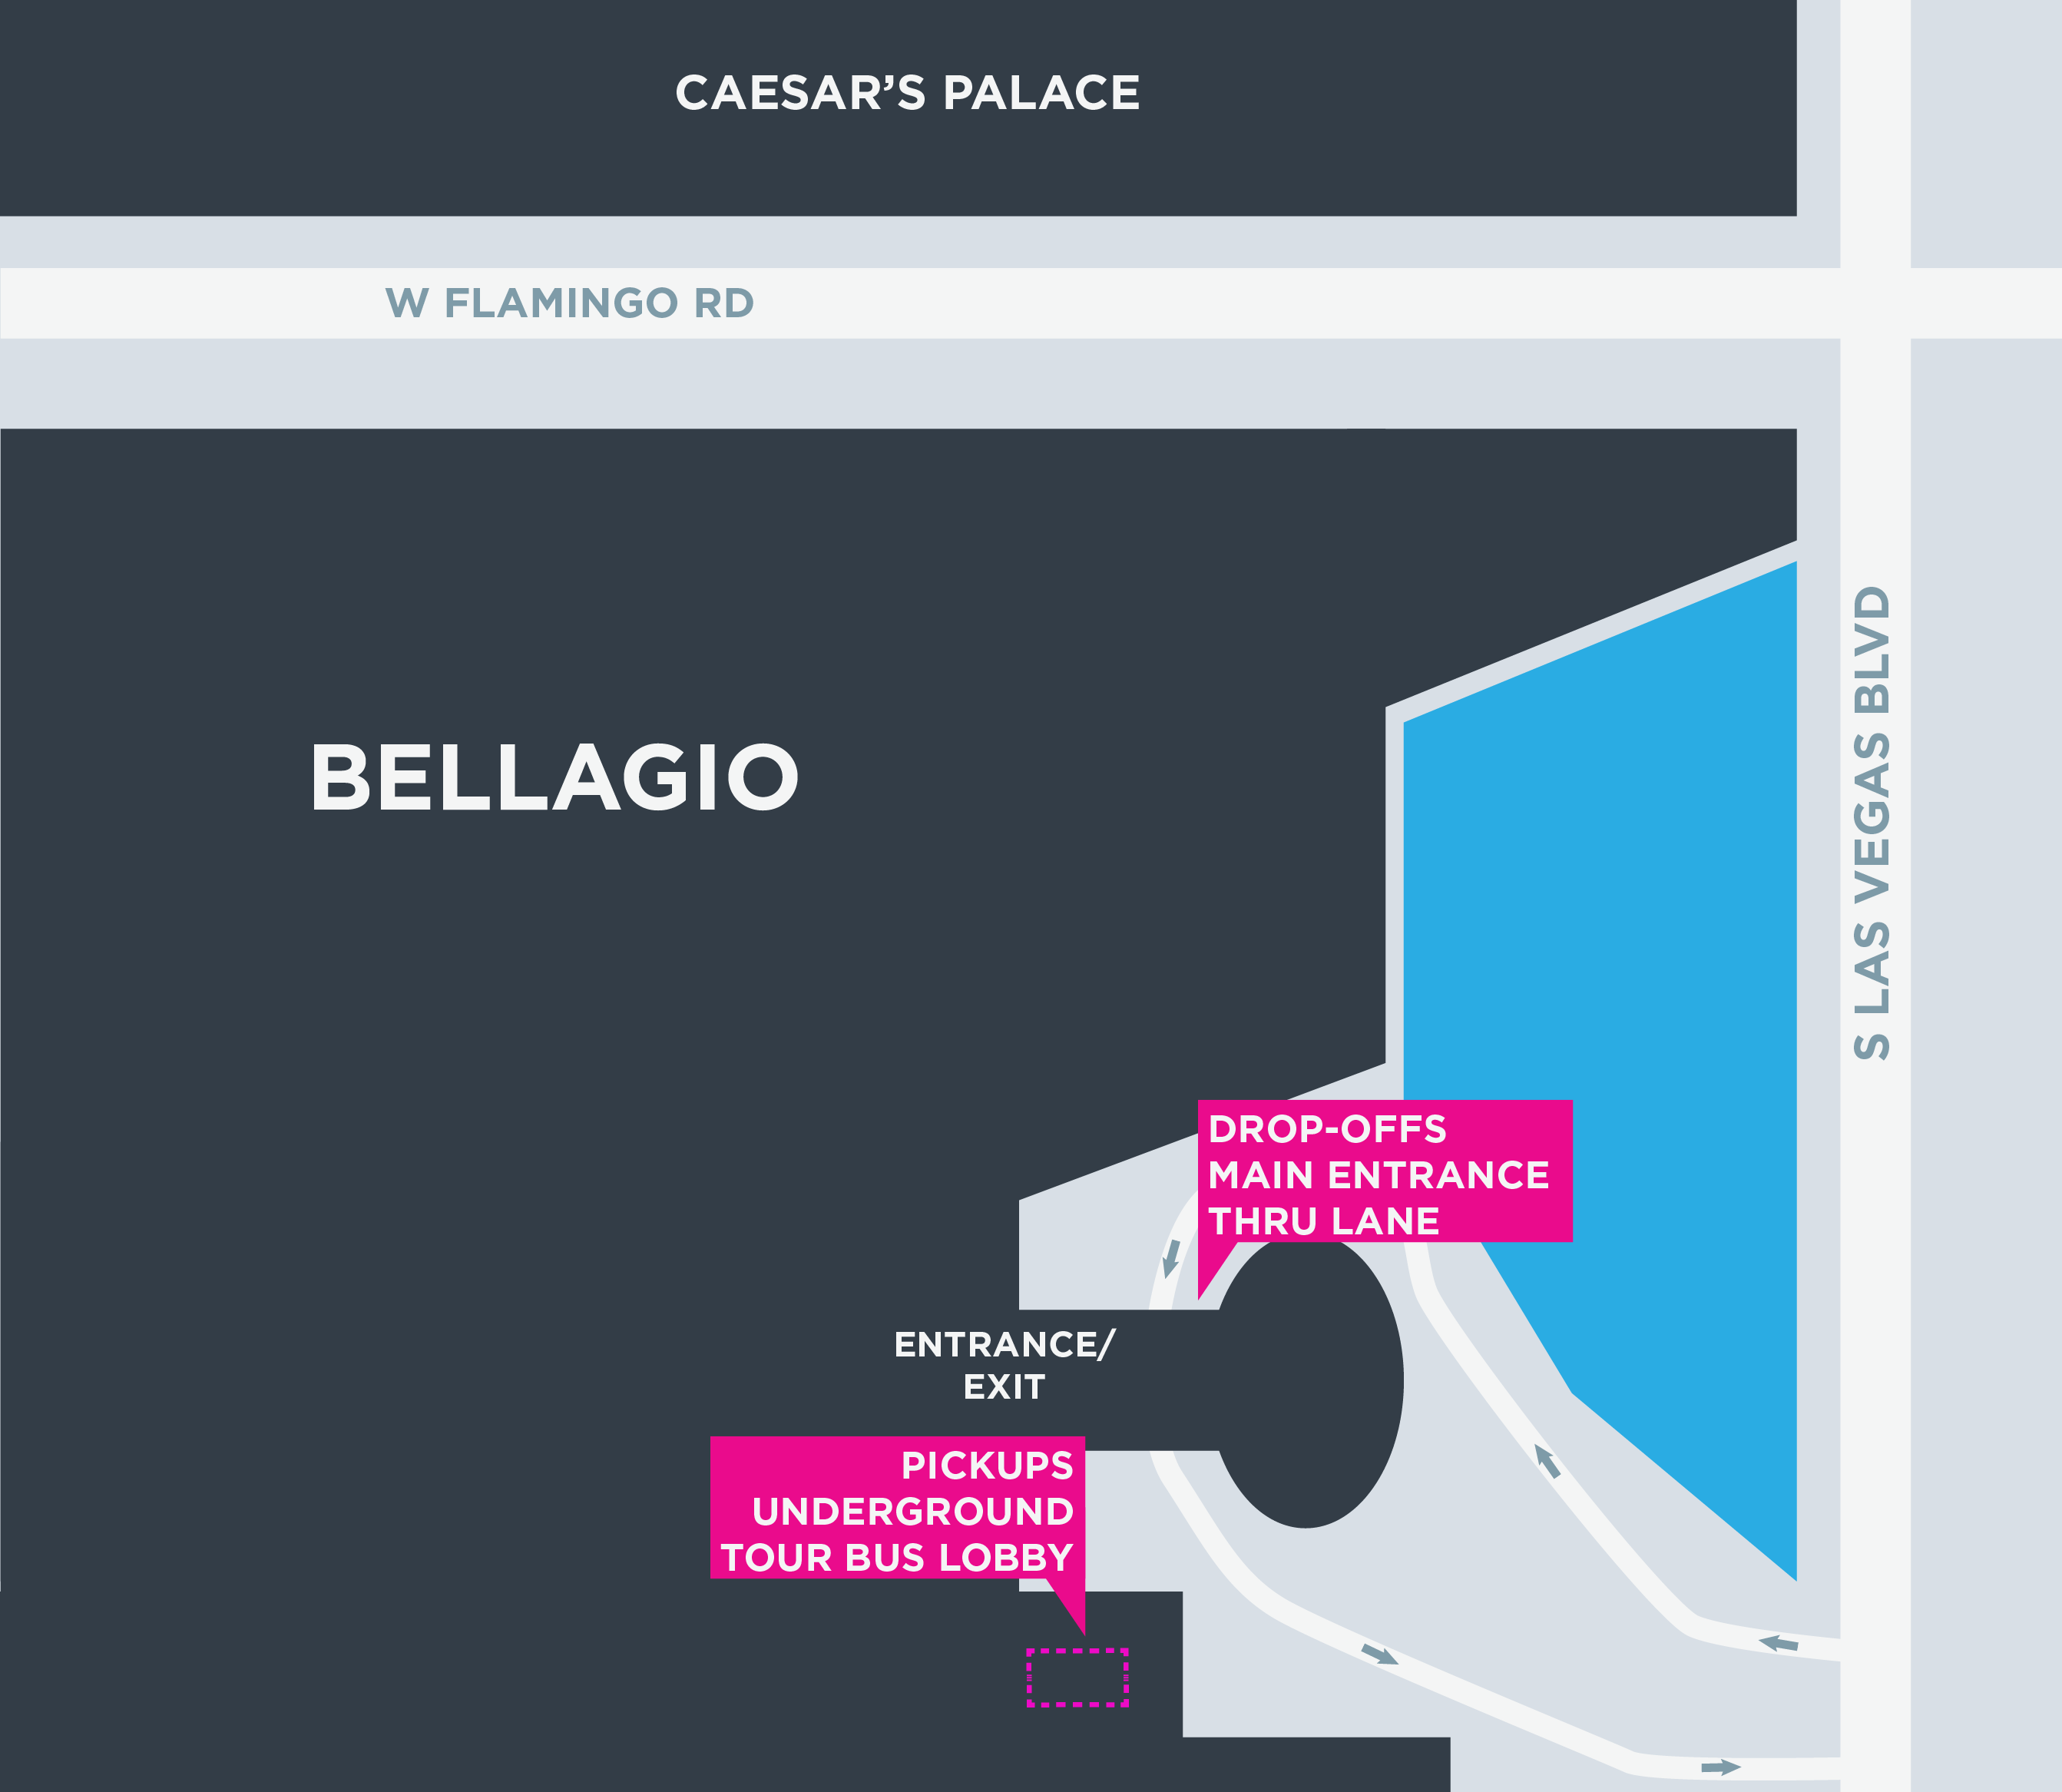 Cette image montre un plan du Bellagio, y compris les zones de départ et d'arrivée.